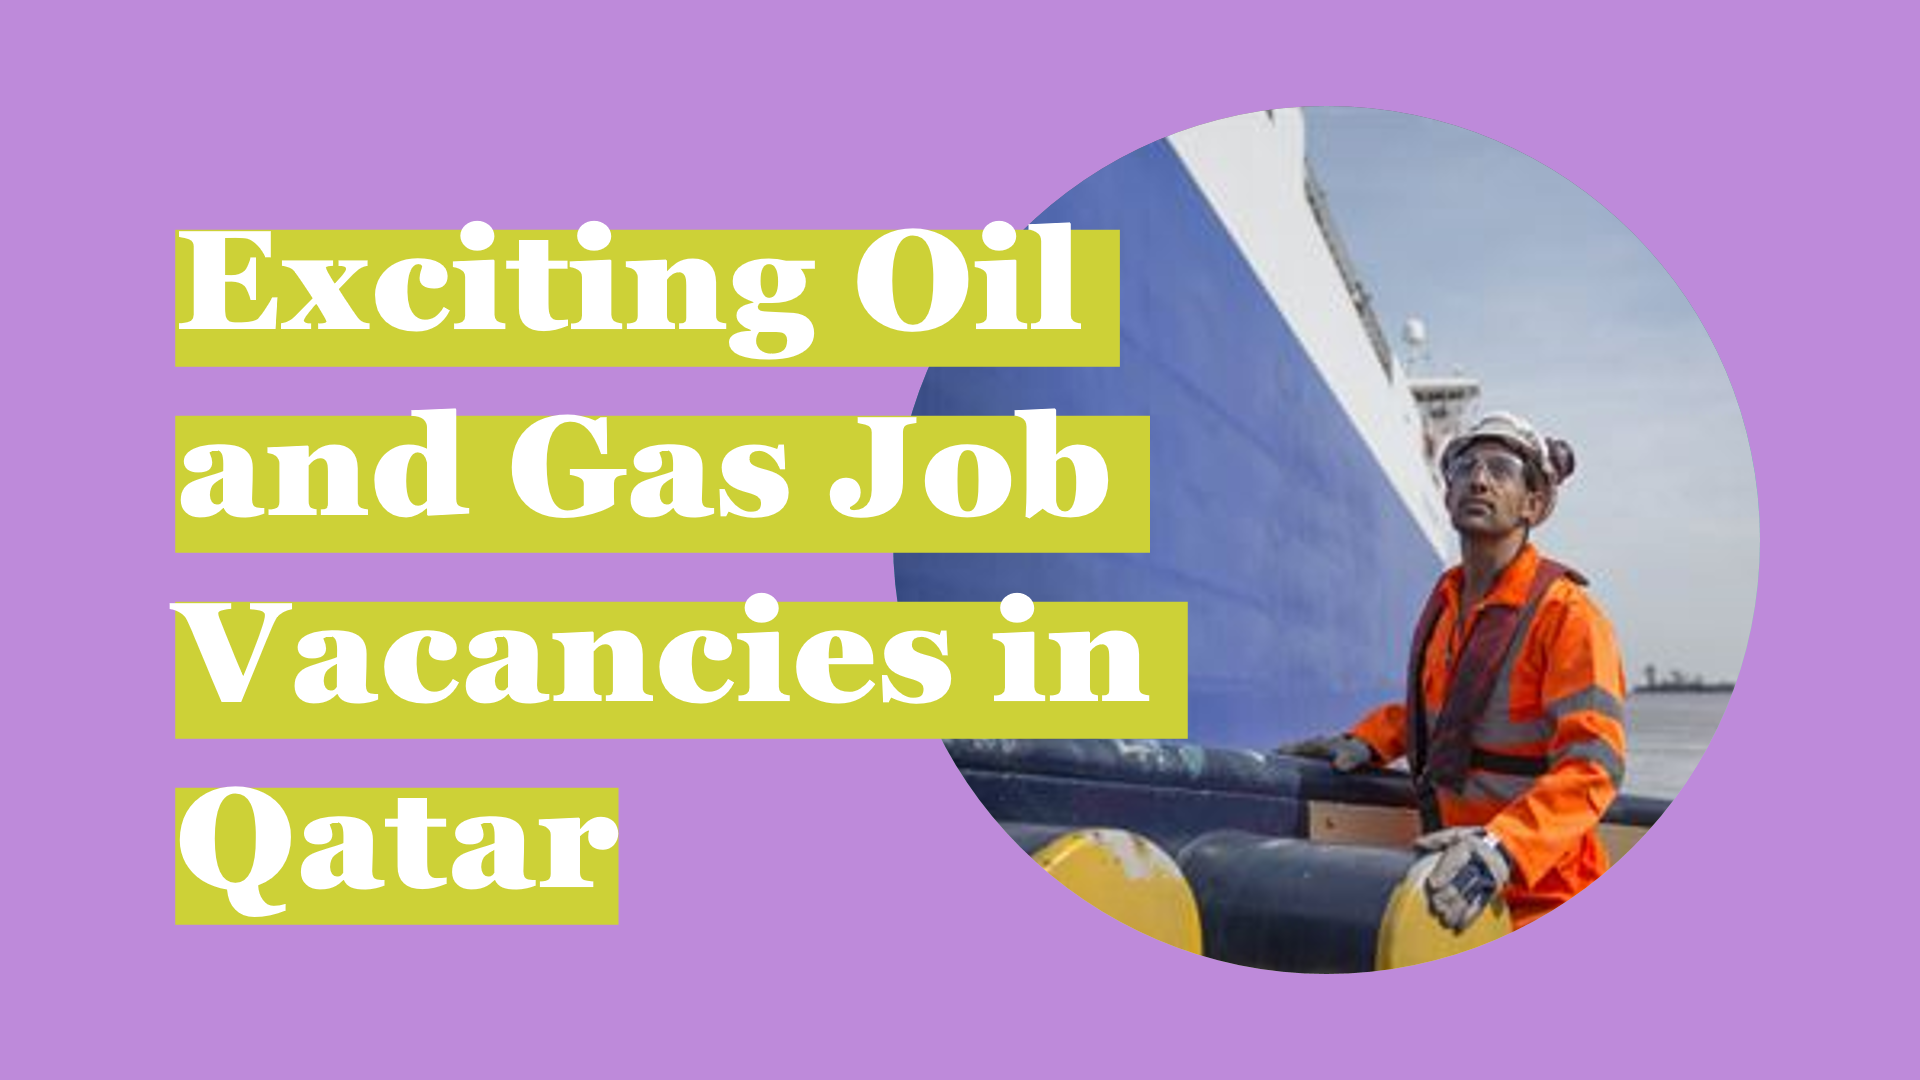 oil and gas jobs vacancies in qatar